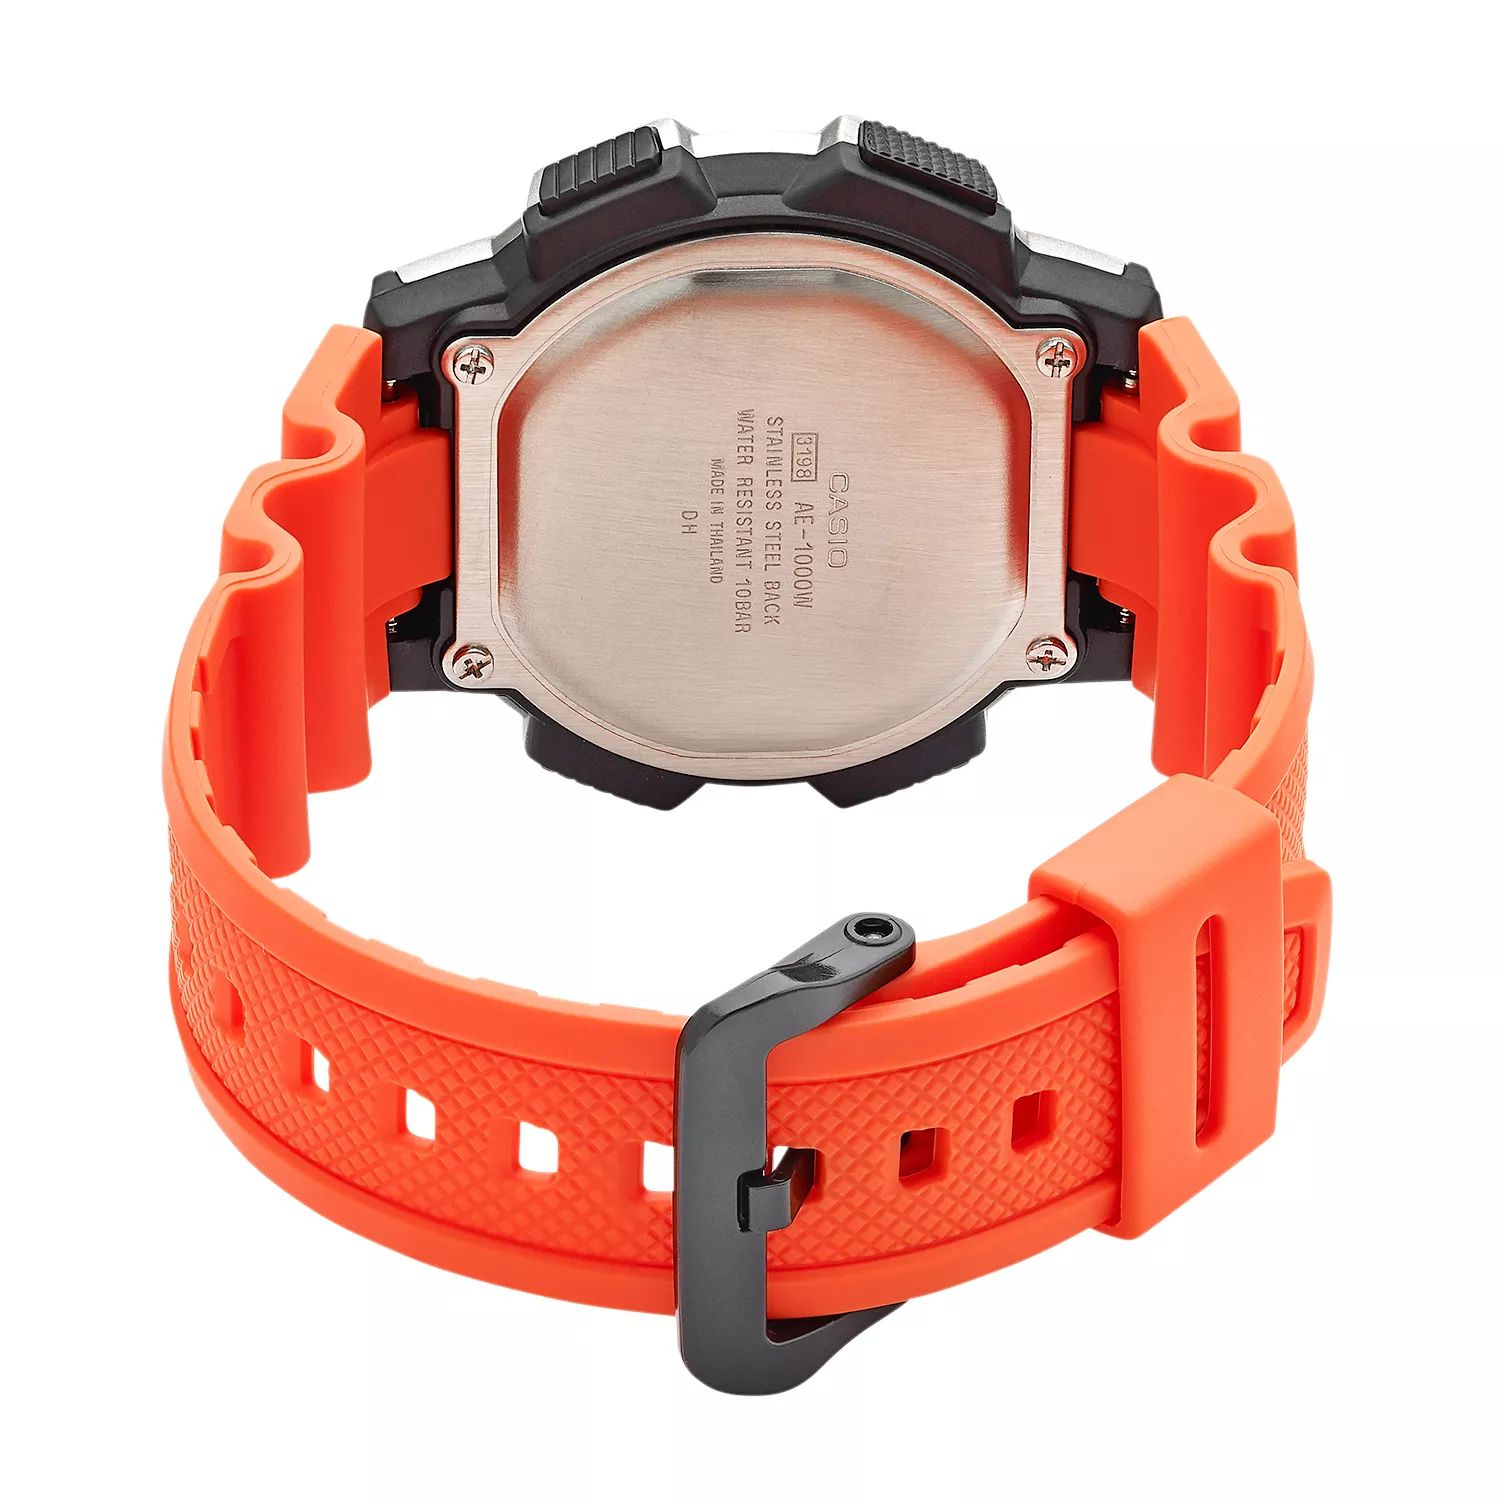 Мужские часы с цифровым хронографом мирового времени — AE1000W-4BVCF Casio цена и фото